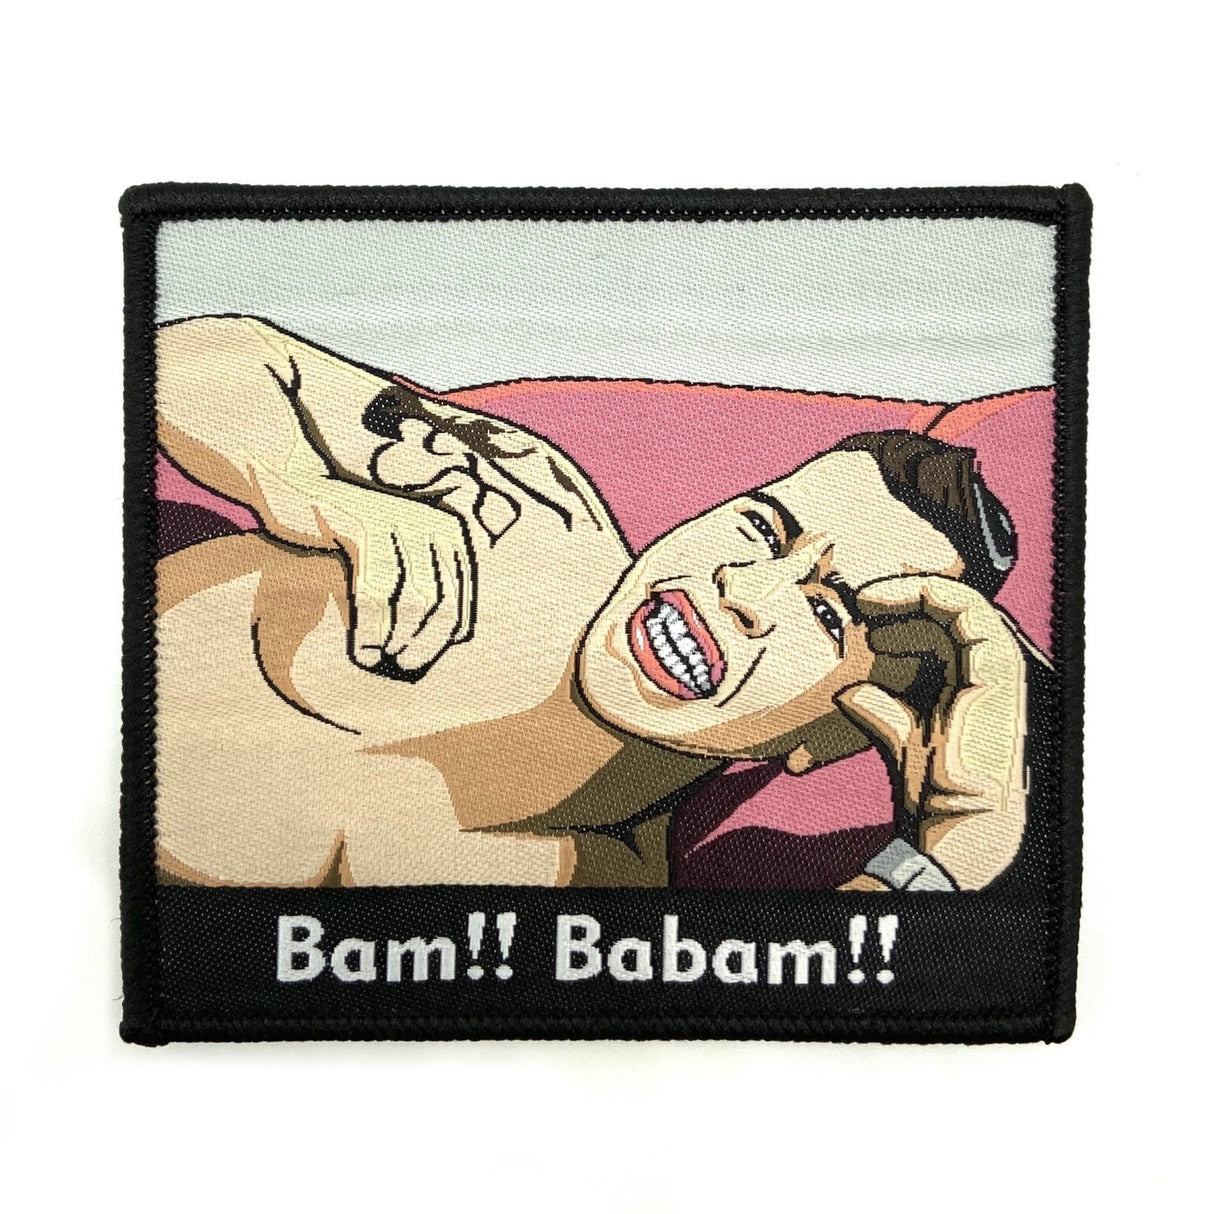 Bam Babam textile patch